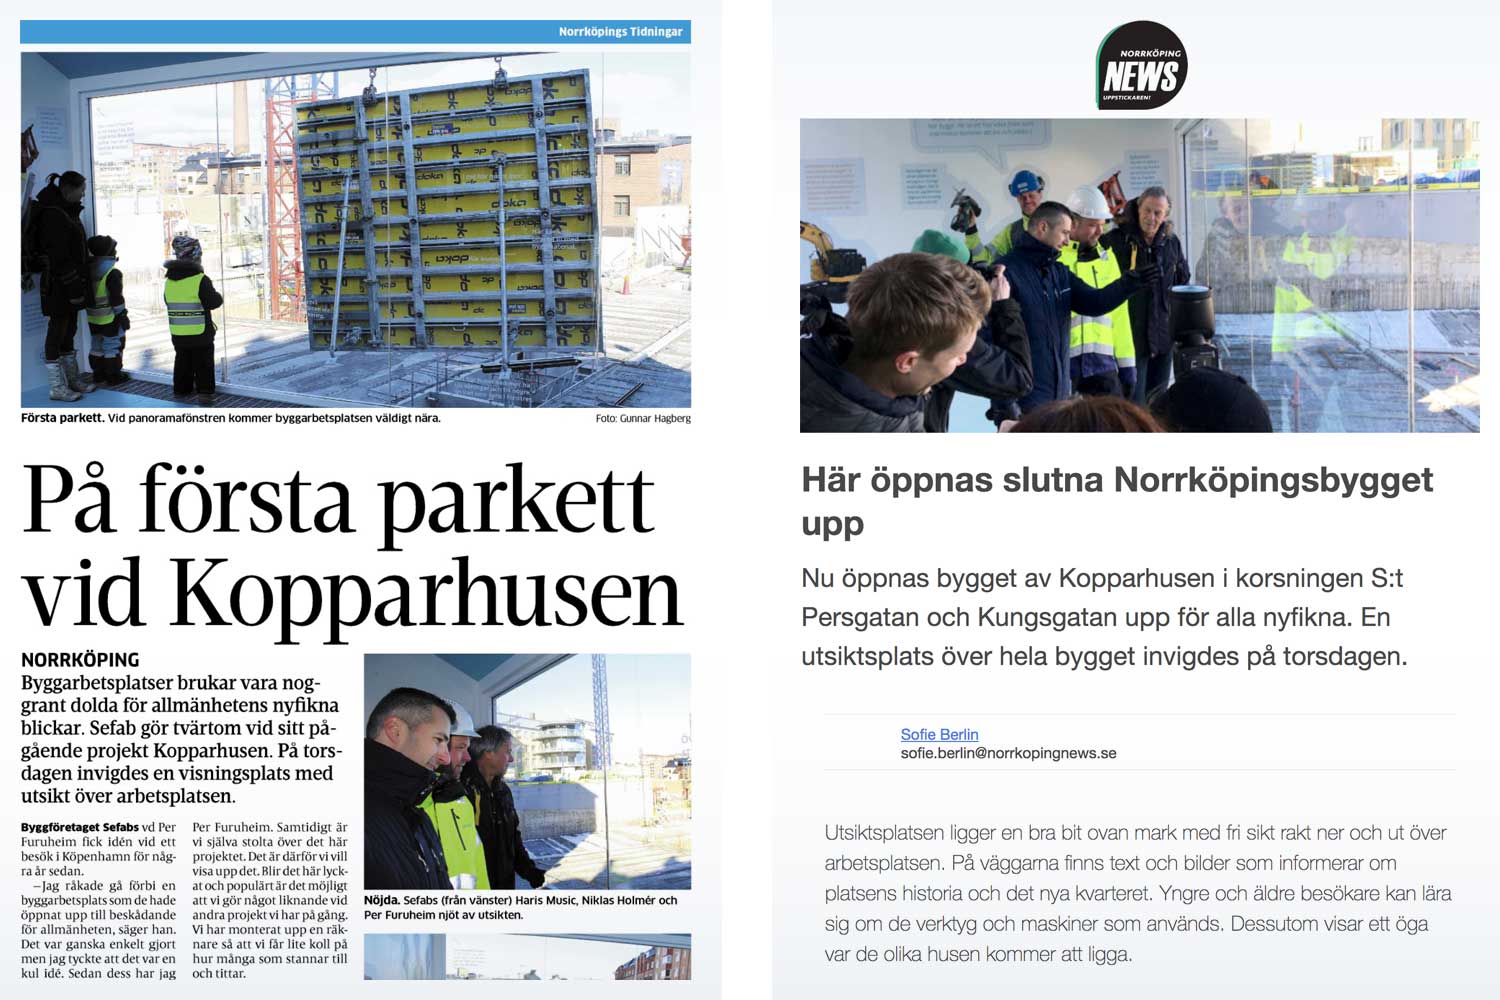 Norrköpings Tidningar och Norrköping News rapporterade från invigningen av utsiktsplatsen.